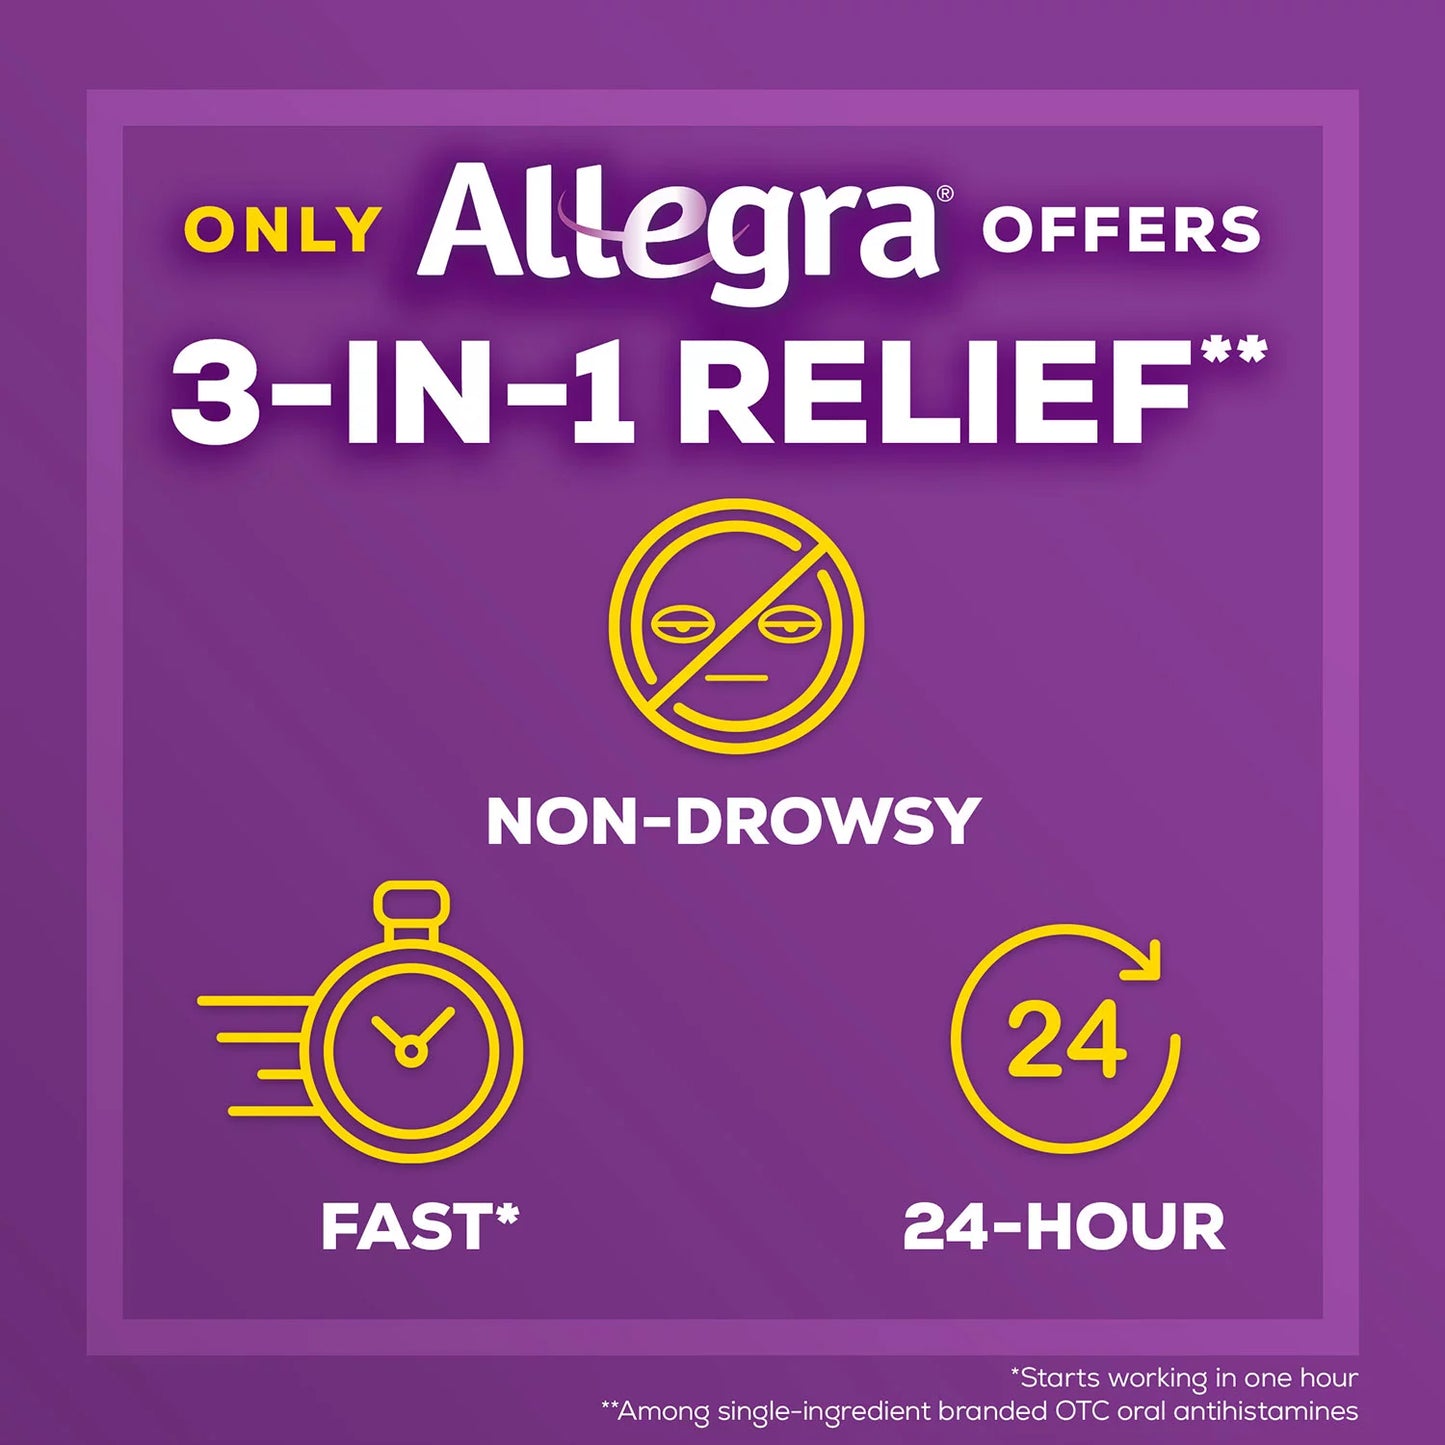 Allegra 24-Hour Indoor/Outdoor Allergy Relief Tablets, 180 mg (110 ct.)